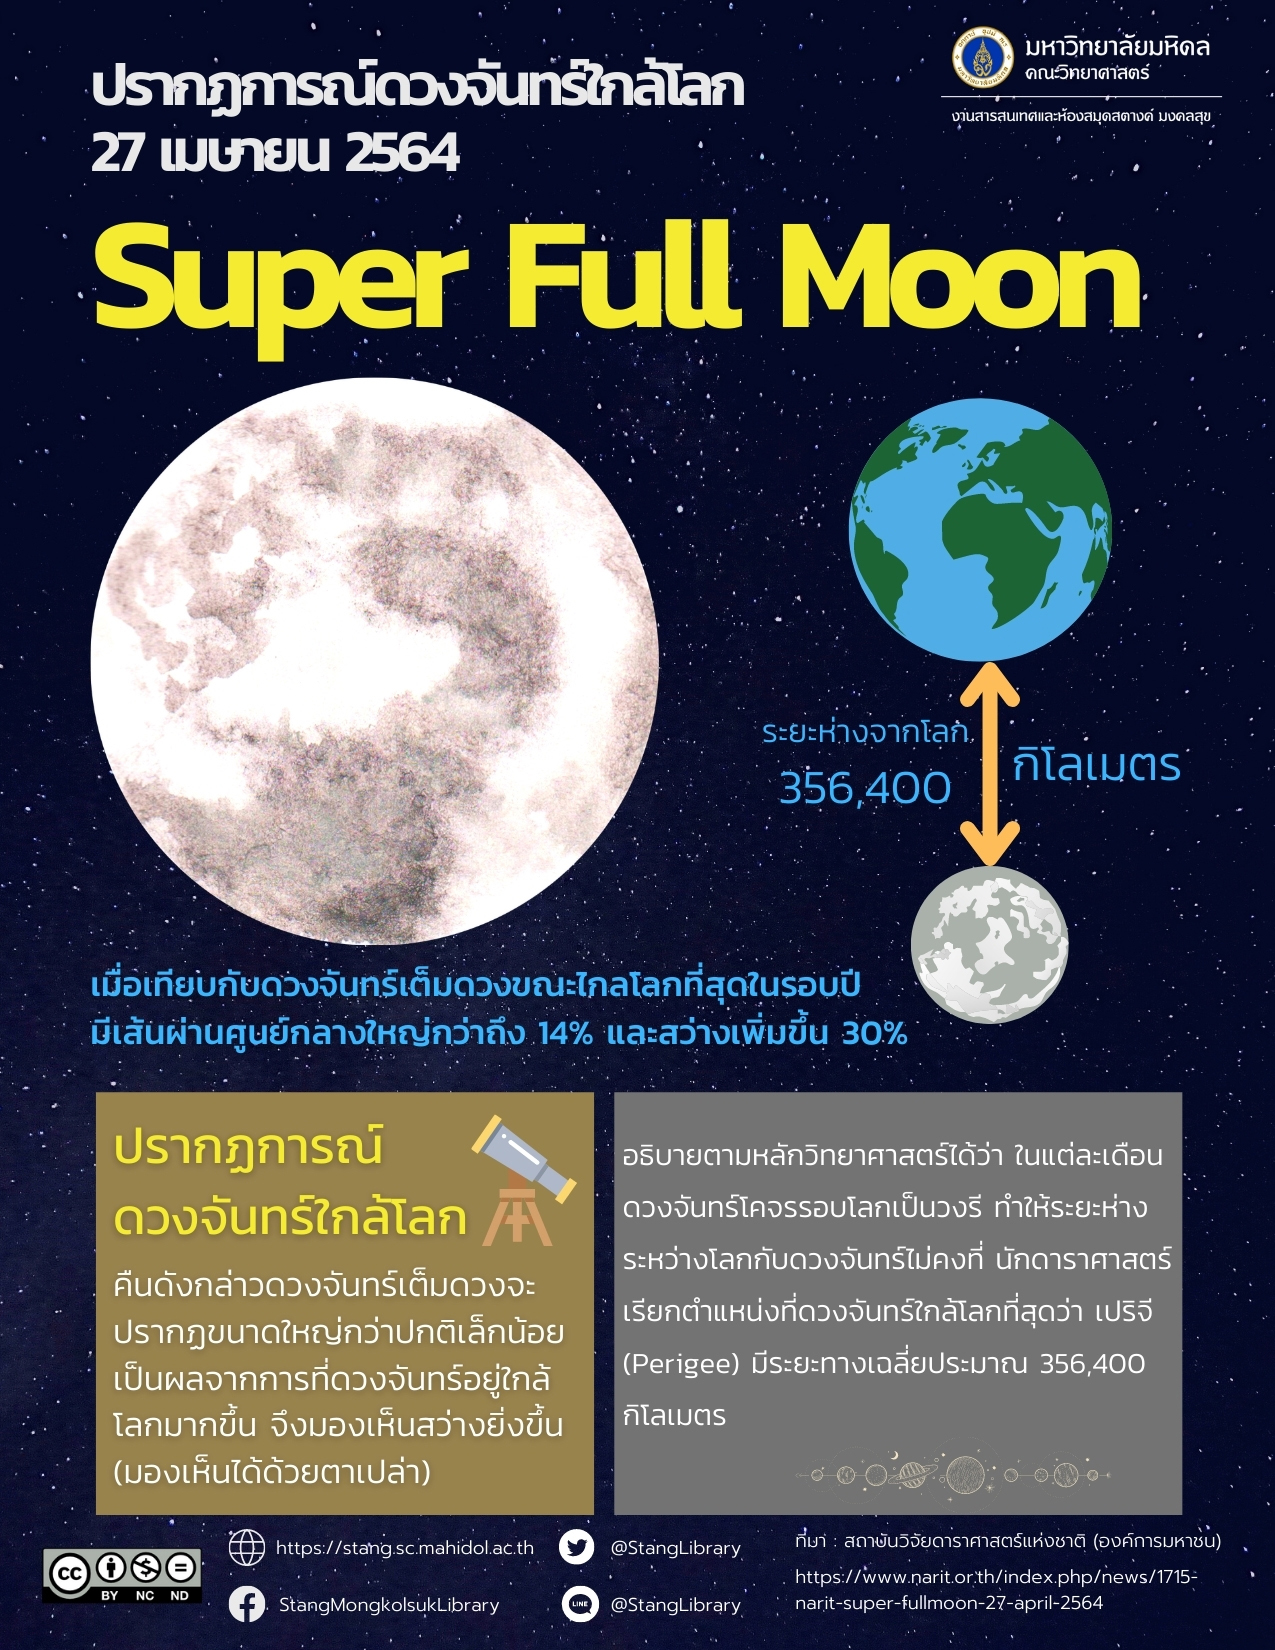 ปรากฏการณ์ดวงจันทร์ใกล้โลก (Super Full Moon)